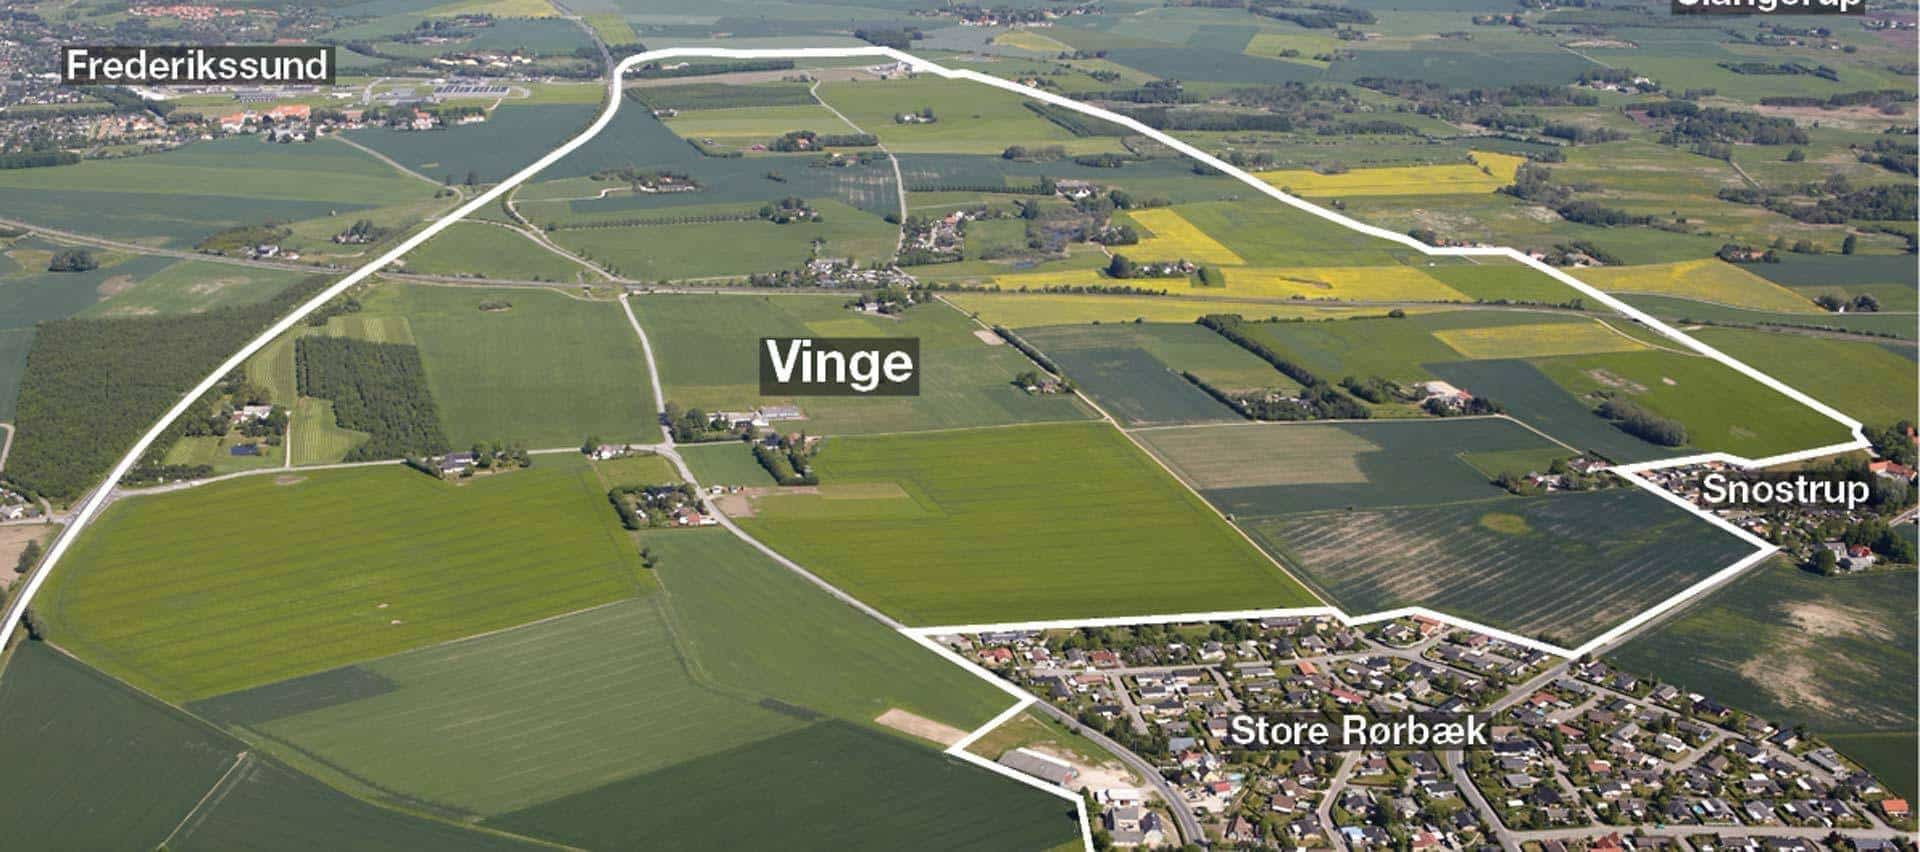 City of Vinge, Denmark